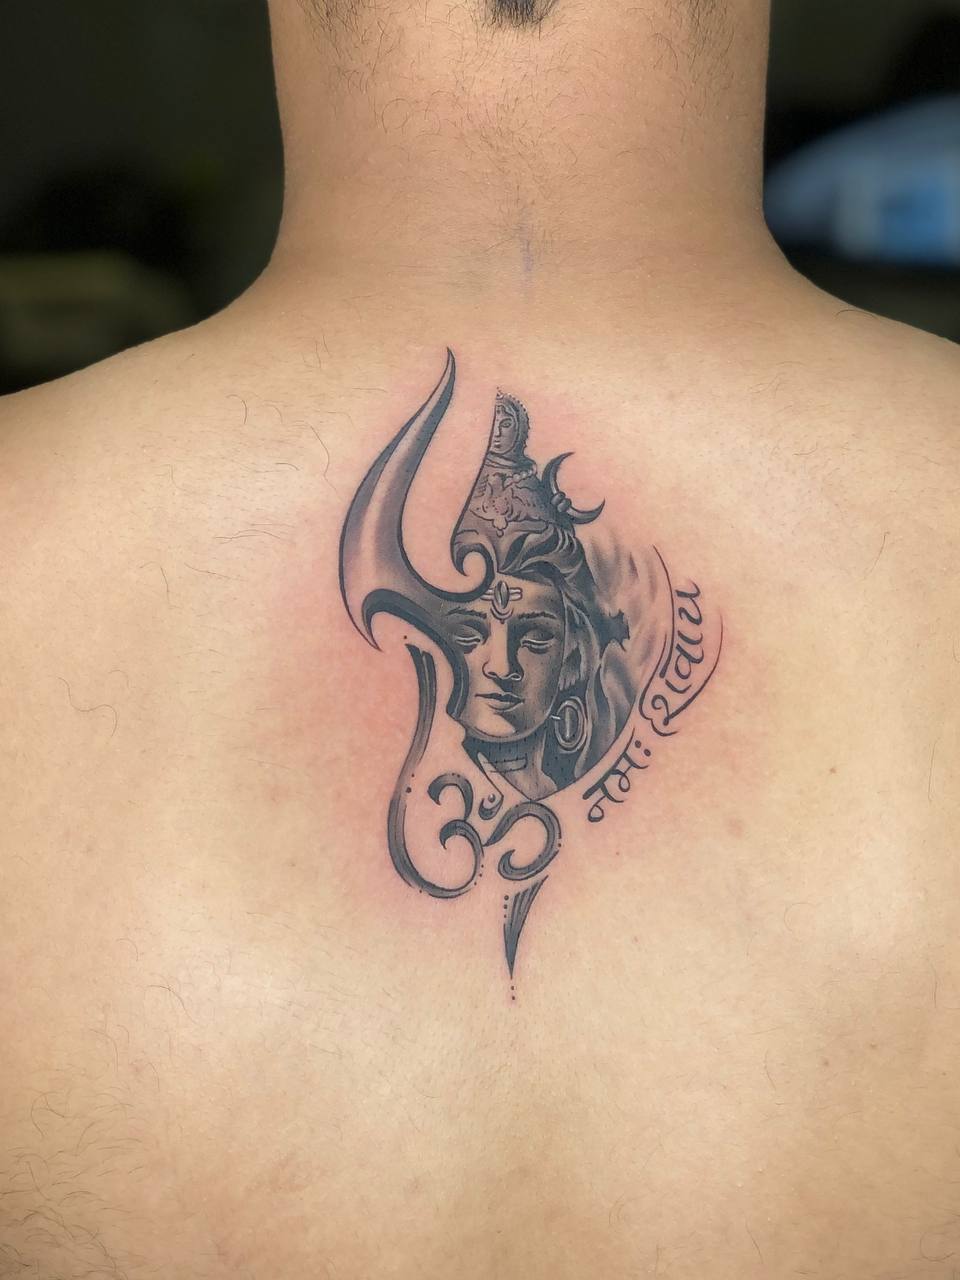 Shiva Tattoo Done by @adi_inc Studio @hawktattooofficial Location  @selectcitywalk . . . #tattoo #tattoos #shiva #ink #love #tattooar... |  Instagram